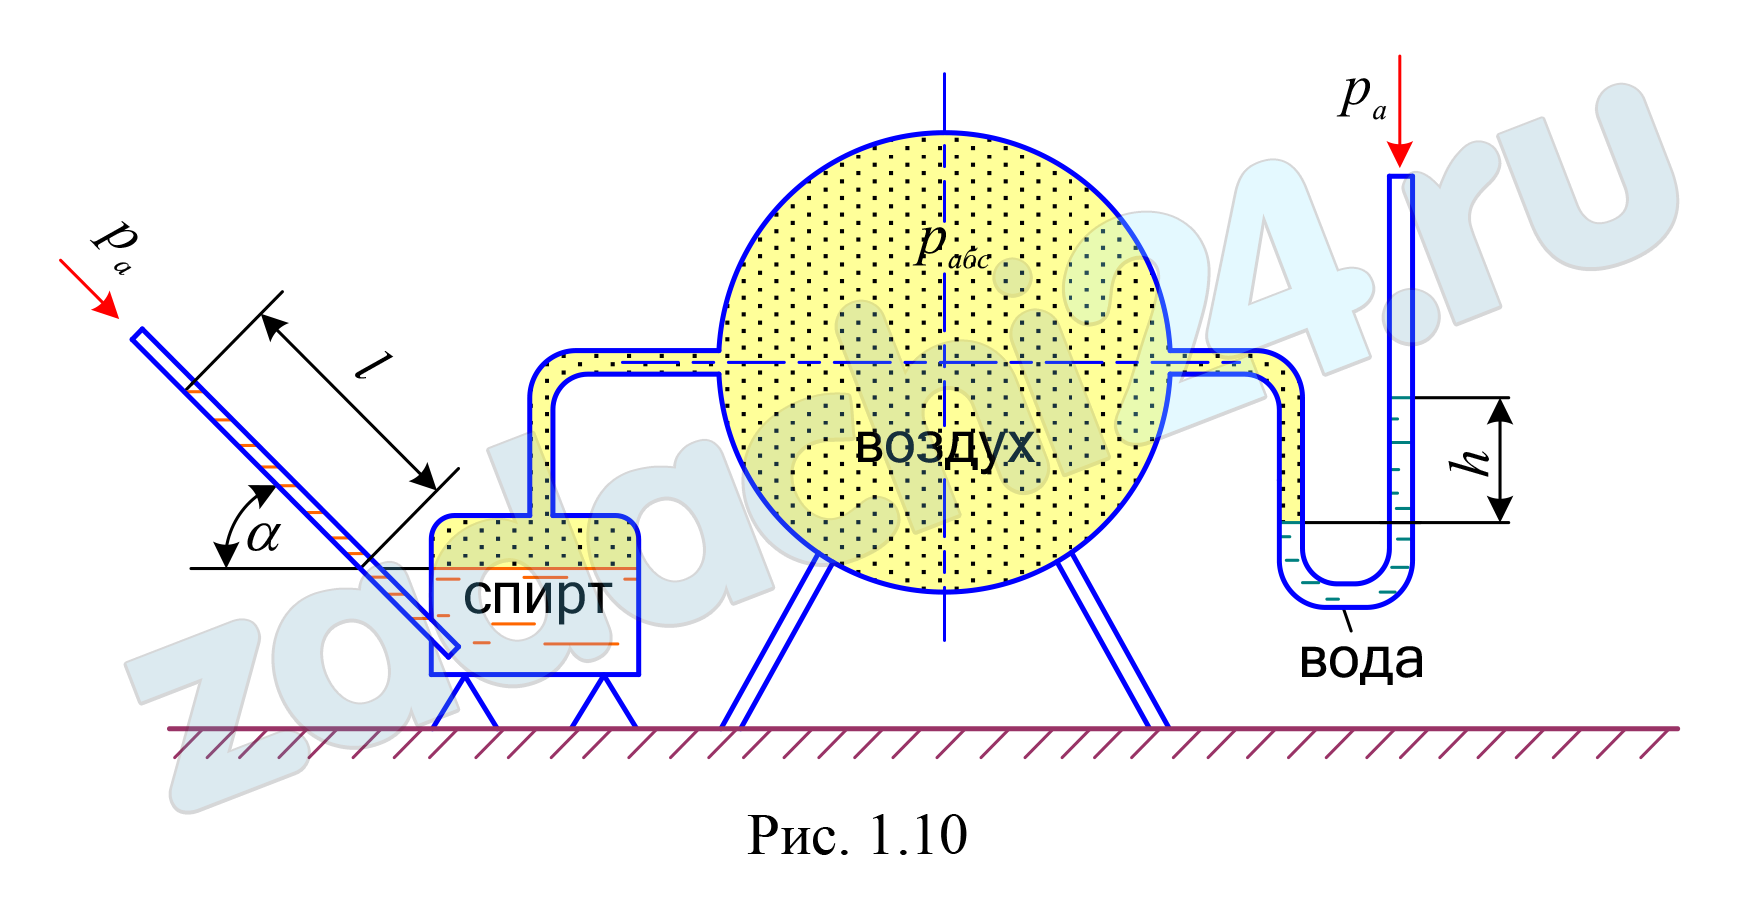 Для определения давления в воздуховоде установлена U – образная трубка, заполненная водой. Для большей точности замеров в случае необходимости подключается чашечный микроманометр с наклонной трубкой, заполненный спиртом (рис. 1.10). Определить абсолютное давление (рабс) в воздуховоде по показанию U - образного манометра h = 120 мм, а также рассчитать показание микроманометра (l в мм ), если угол наклона трубки α = 60˚. Принять атмосферное давление ра = 740 мм рт. ст., плотности жидкостей: спирта ρсп = 790 кг/м³; воды ρ = 10³ кг/м³. Плотность воздуха можно не учитывать.